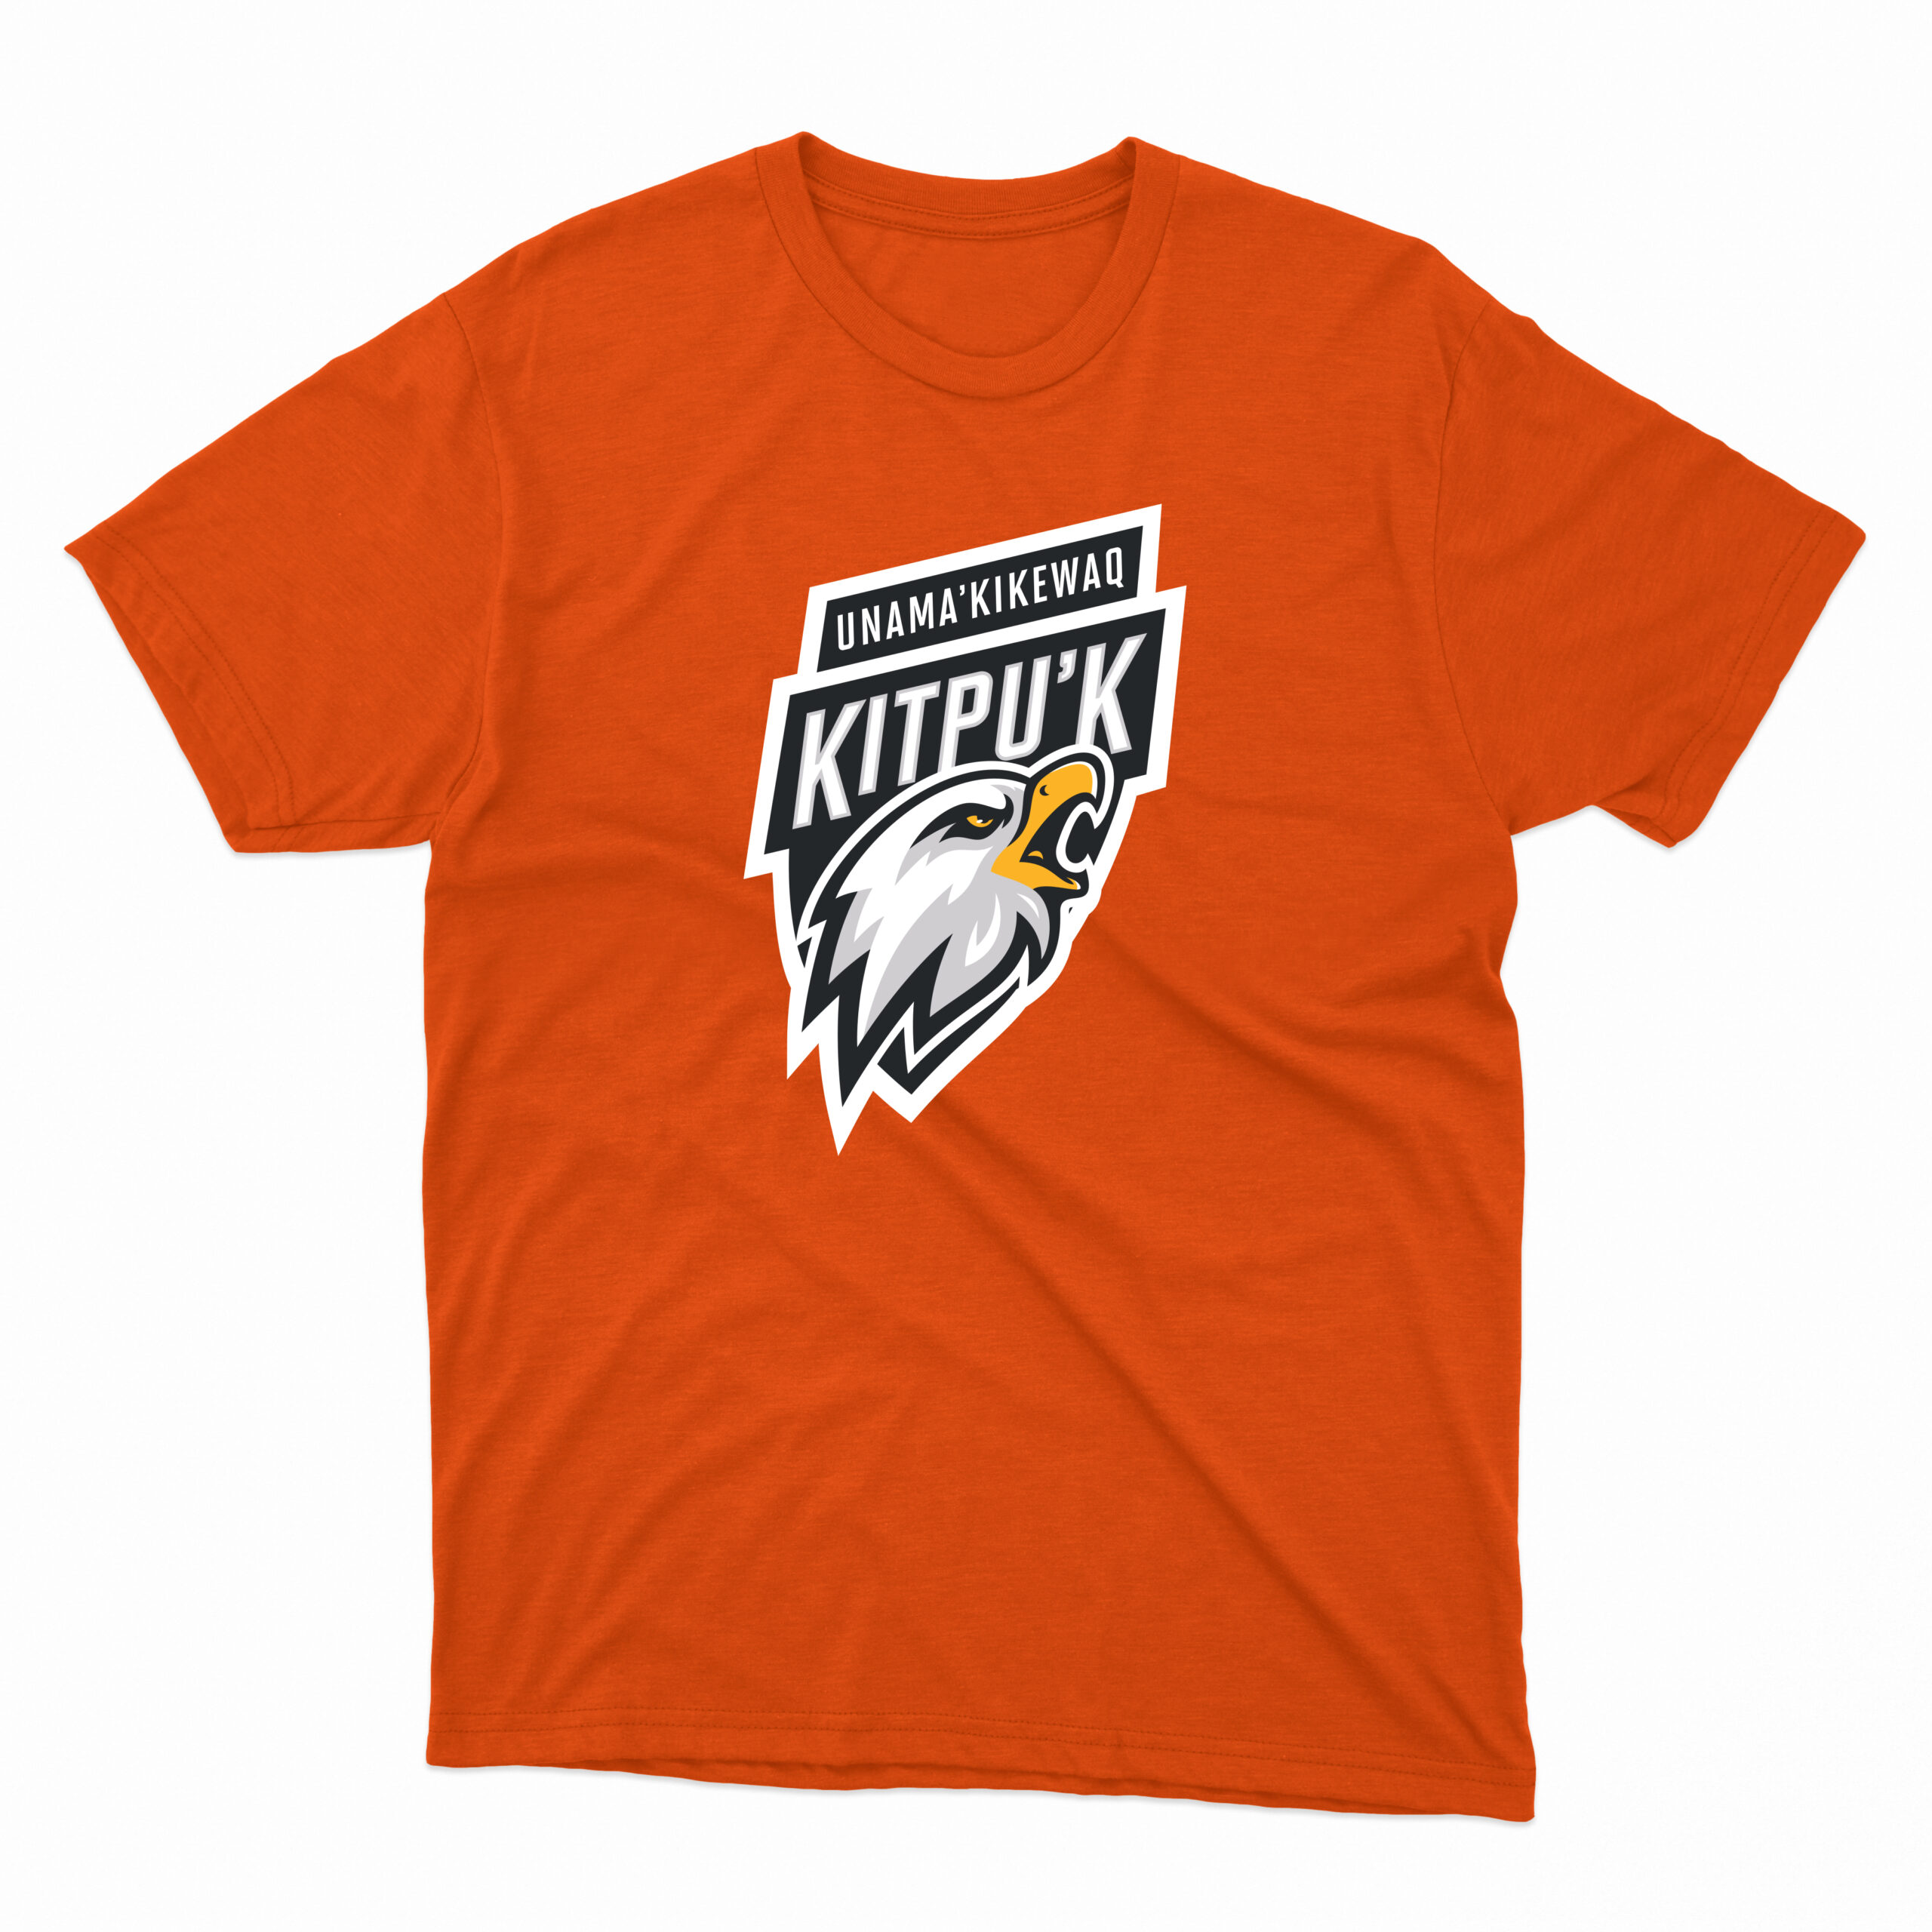 Eagles Orange Unama’ki T-Shirt